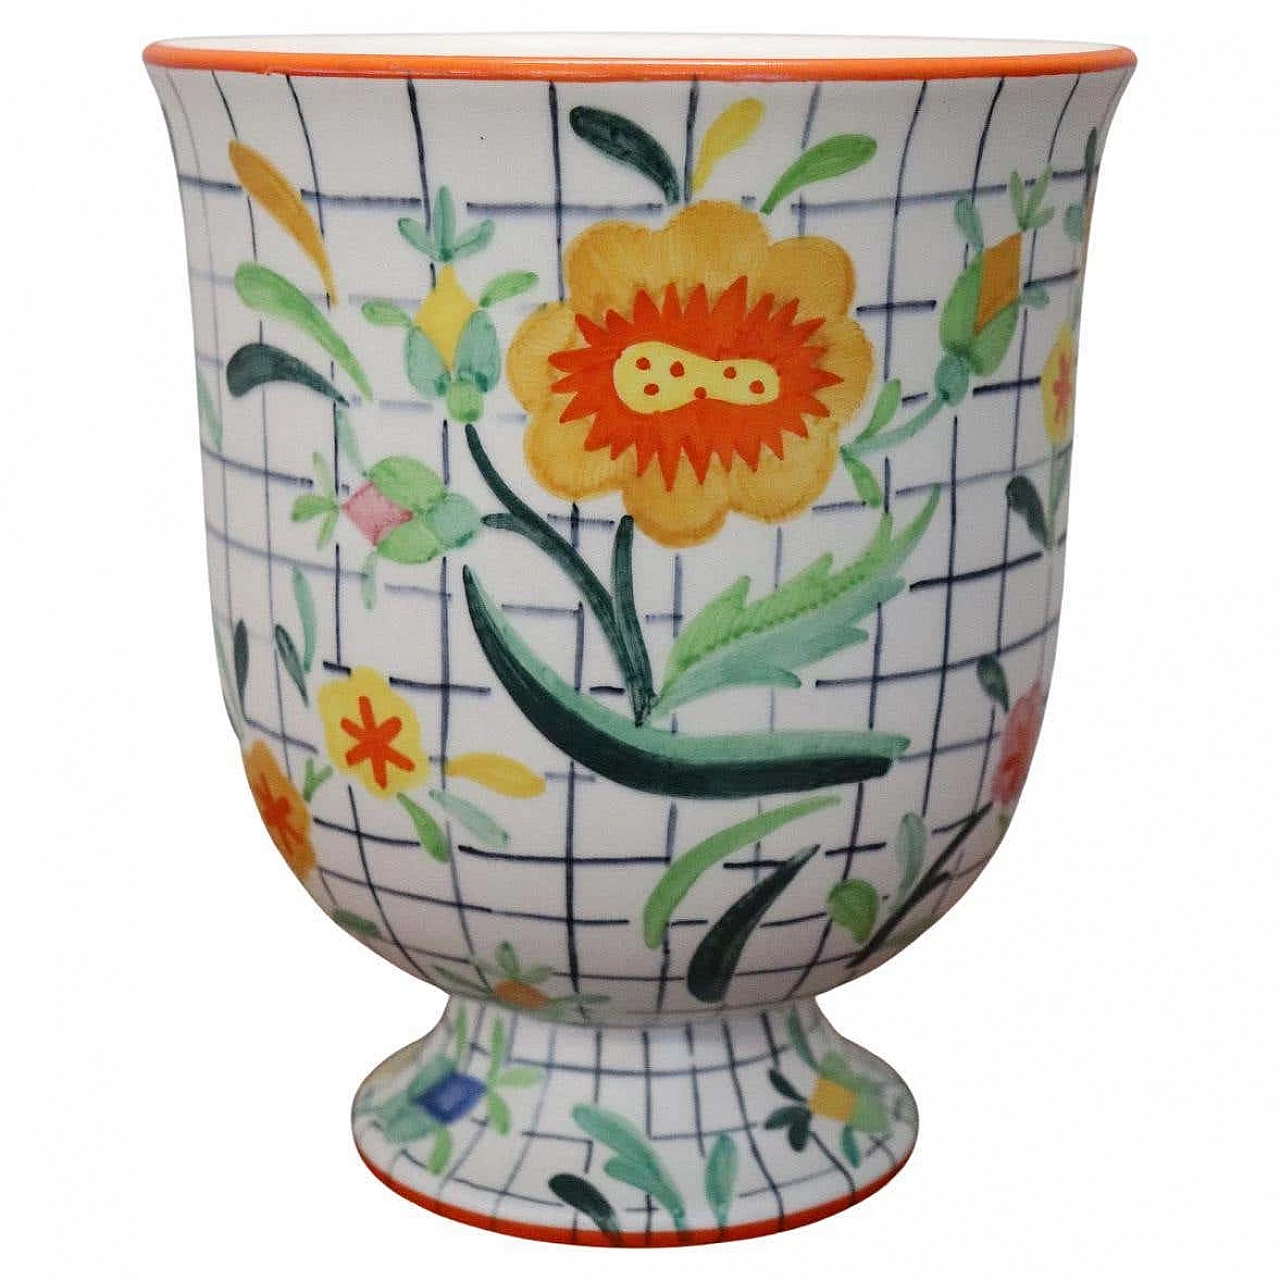 Lenci hand-painted ceramic vase, 1930s 1368360